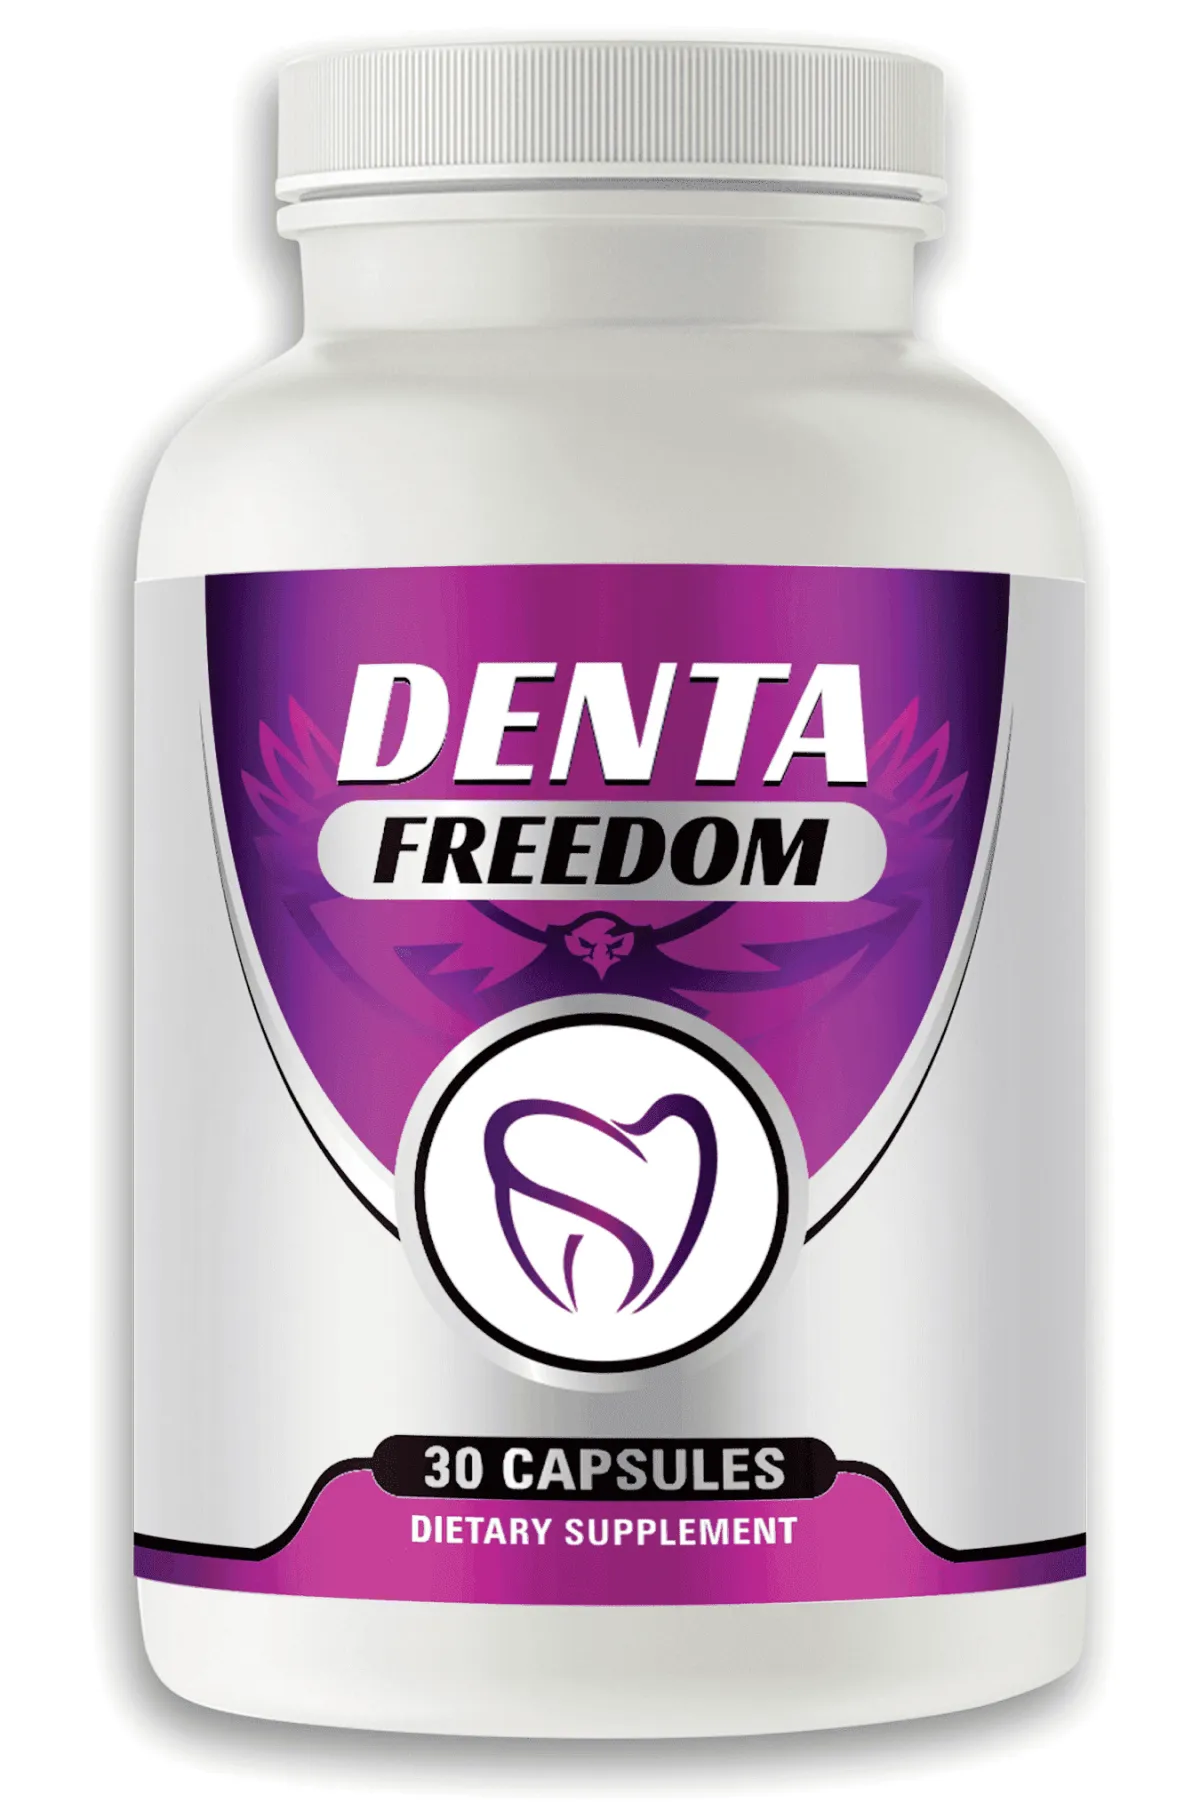 Denta Freedom supplement